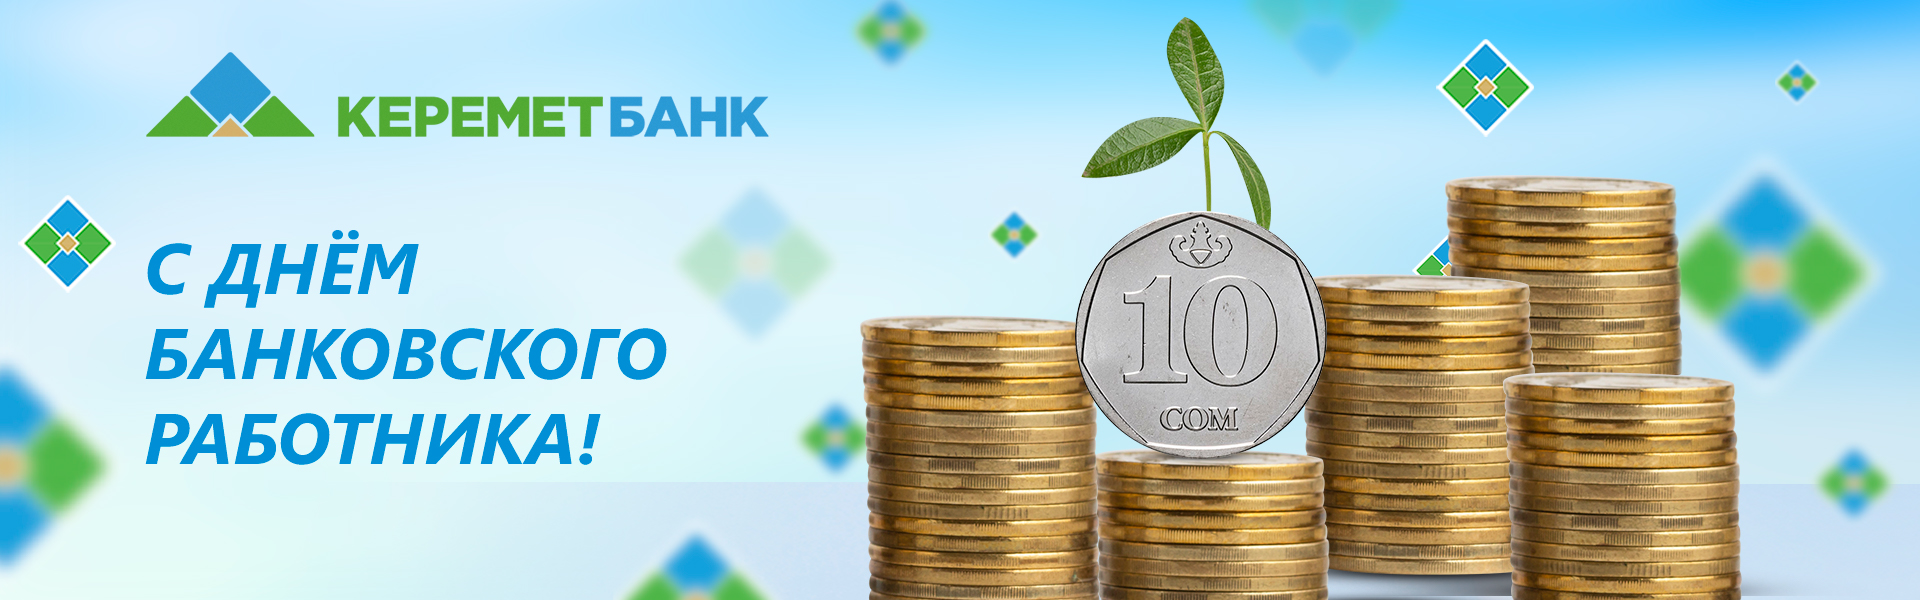 День банковского работника Кыргызстана